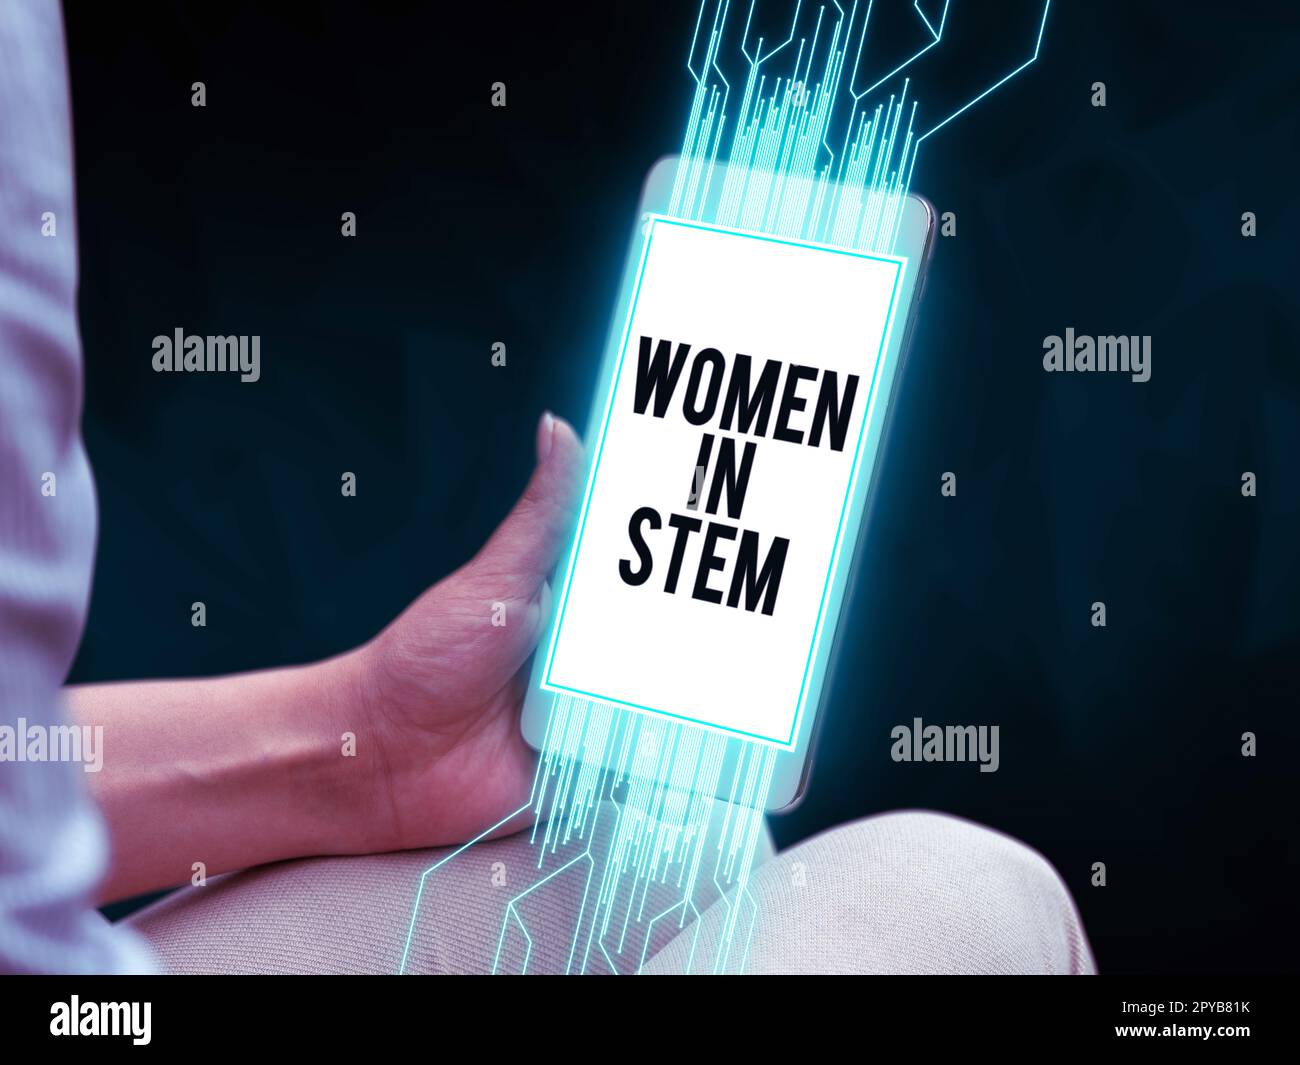 Affiche montrant les femmes dans la tige. Approche commerciale Science technologie Ingénierie mathématiques scientifique recherche Banque D'Images